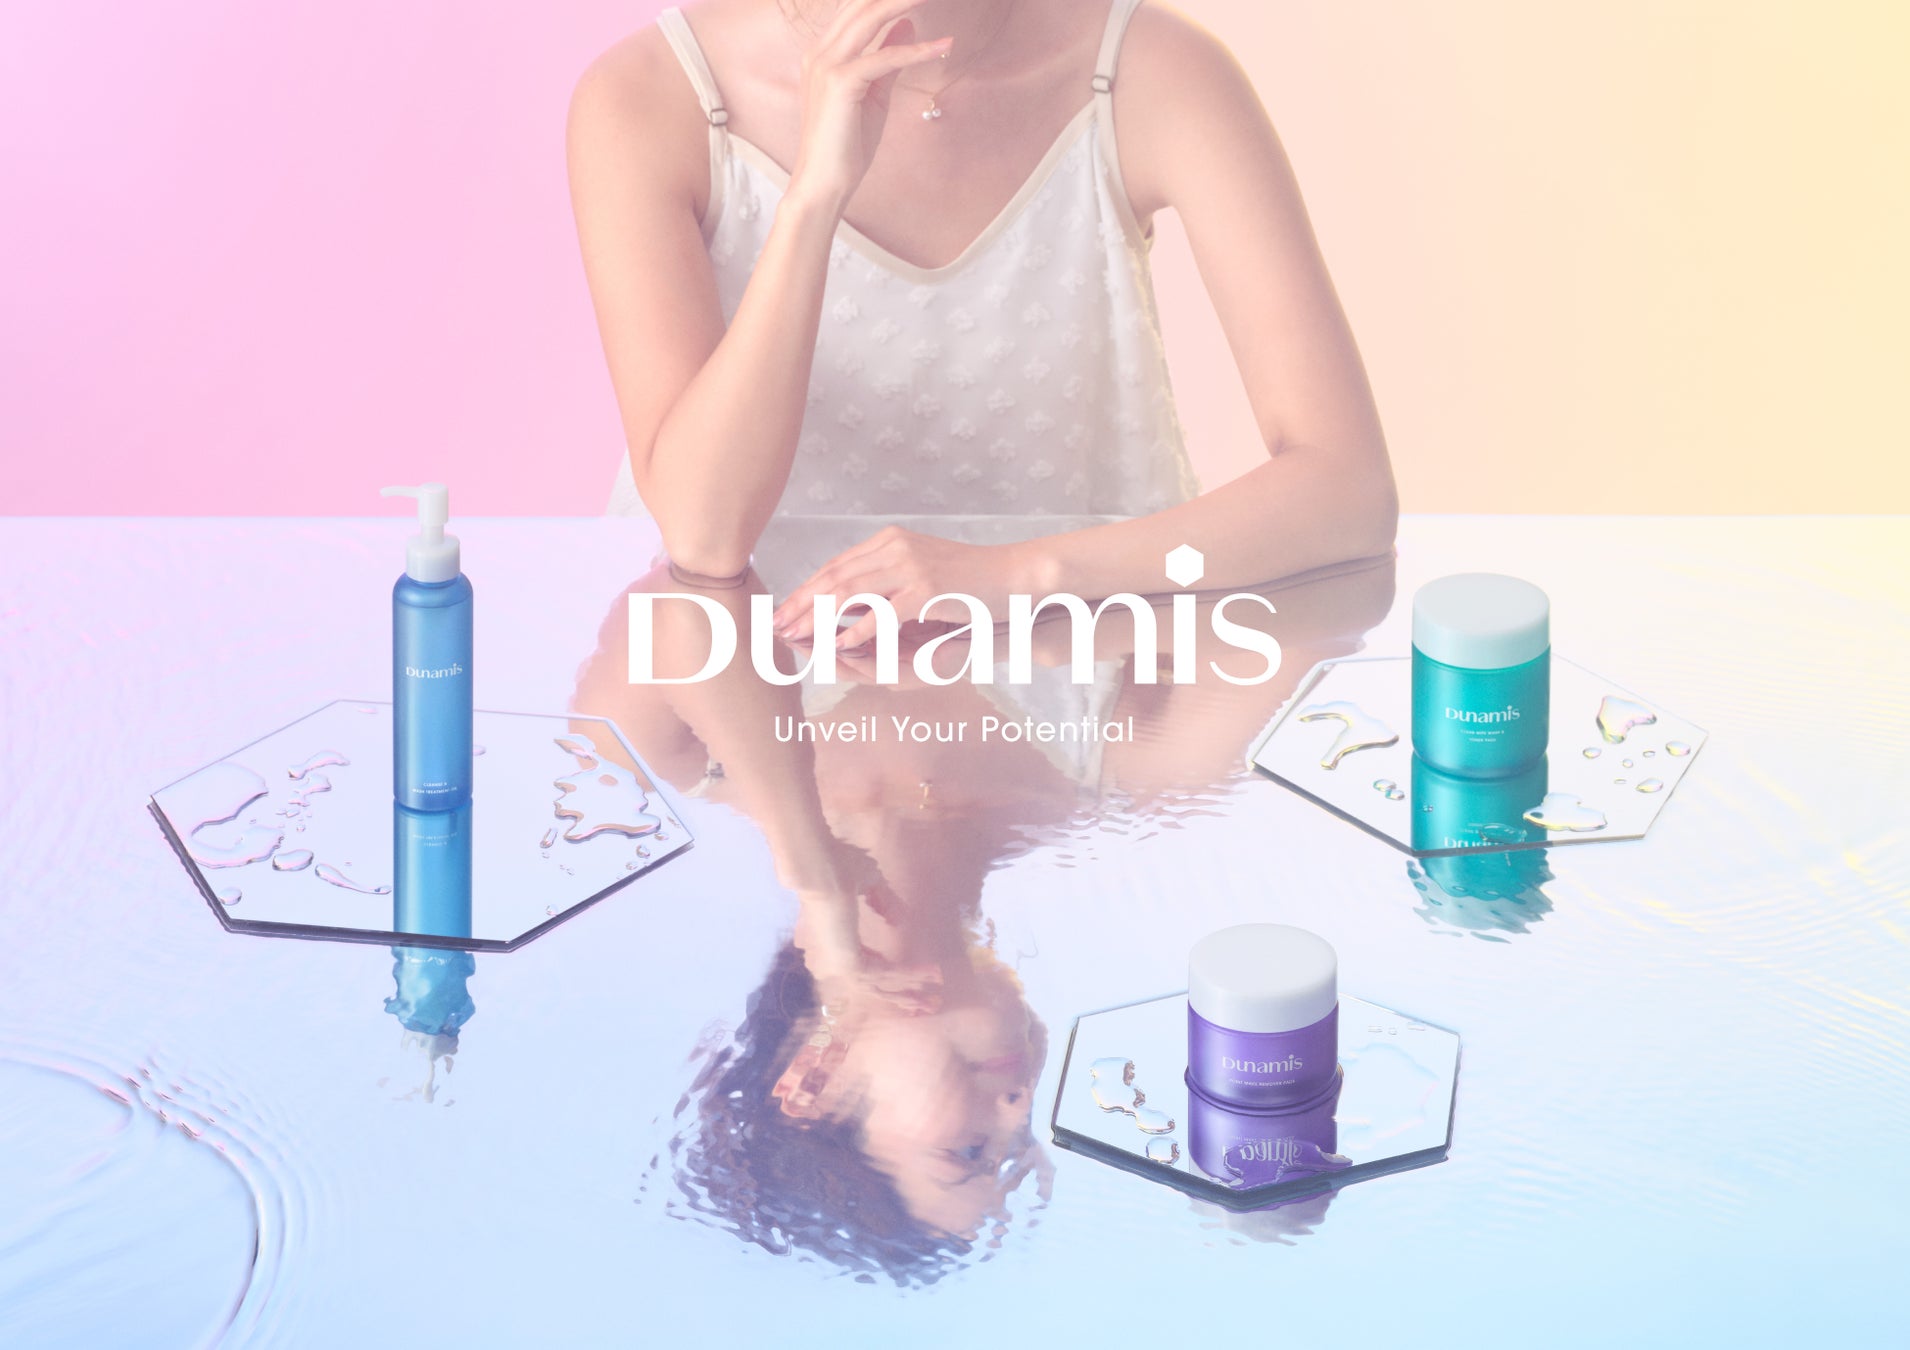 20代の肌悩みを考えたスキンケアブランド「Dunamis」8月2日(金)より全国のPLAZA・MINiPLAにて発売開始！